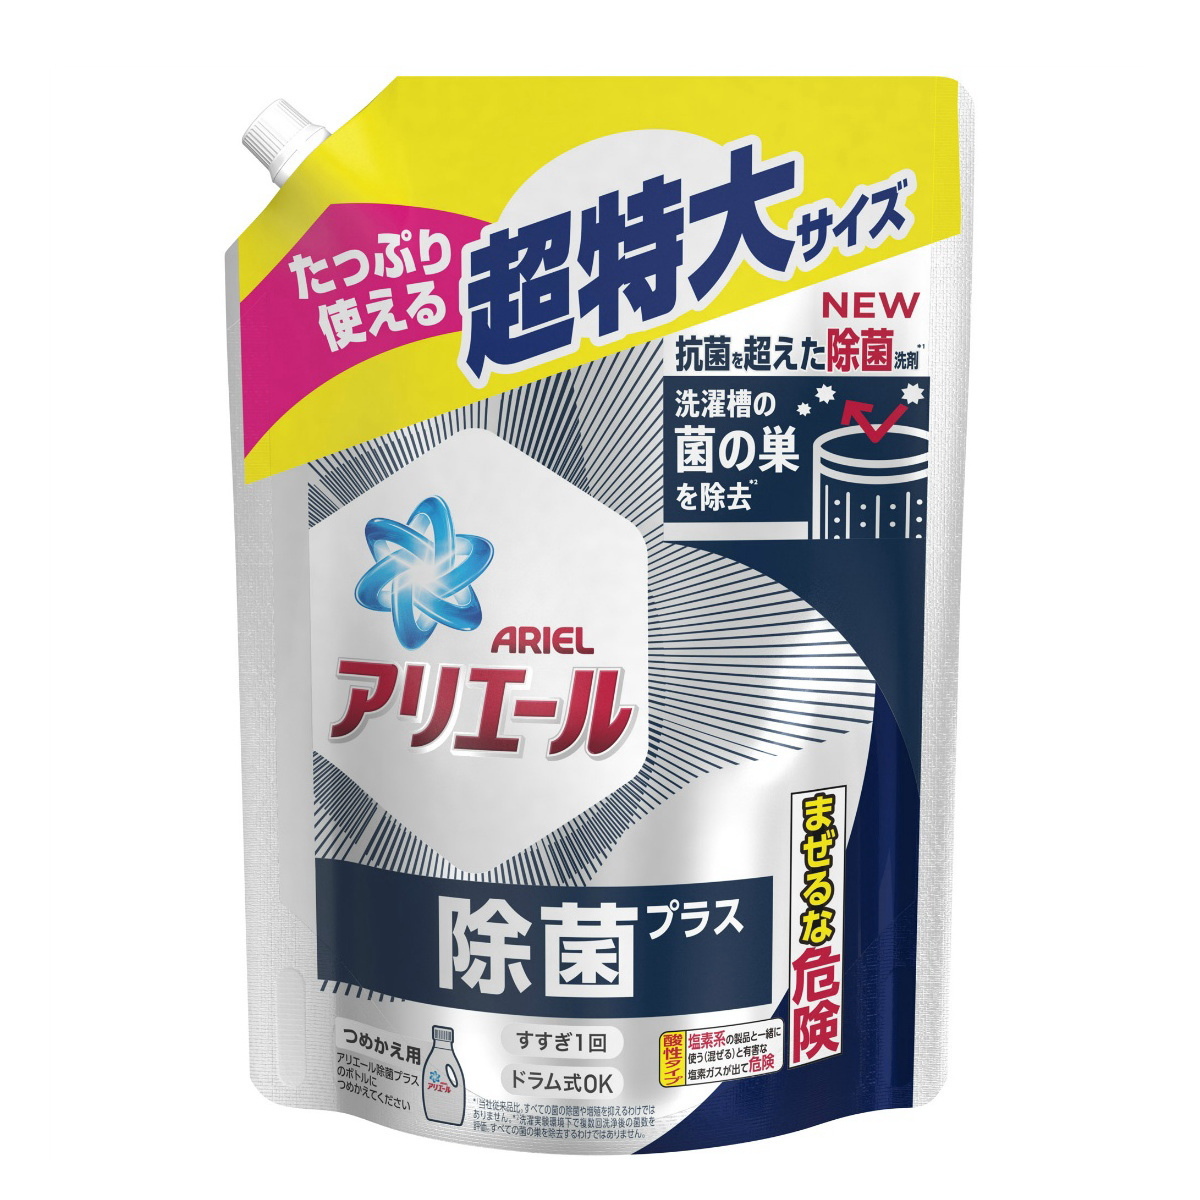 P&G アリエール 除菌プラス ジェル [つめかえ用] 945g × 6個 アリエール 液体洗剤の商品画像